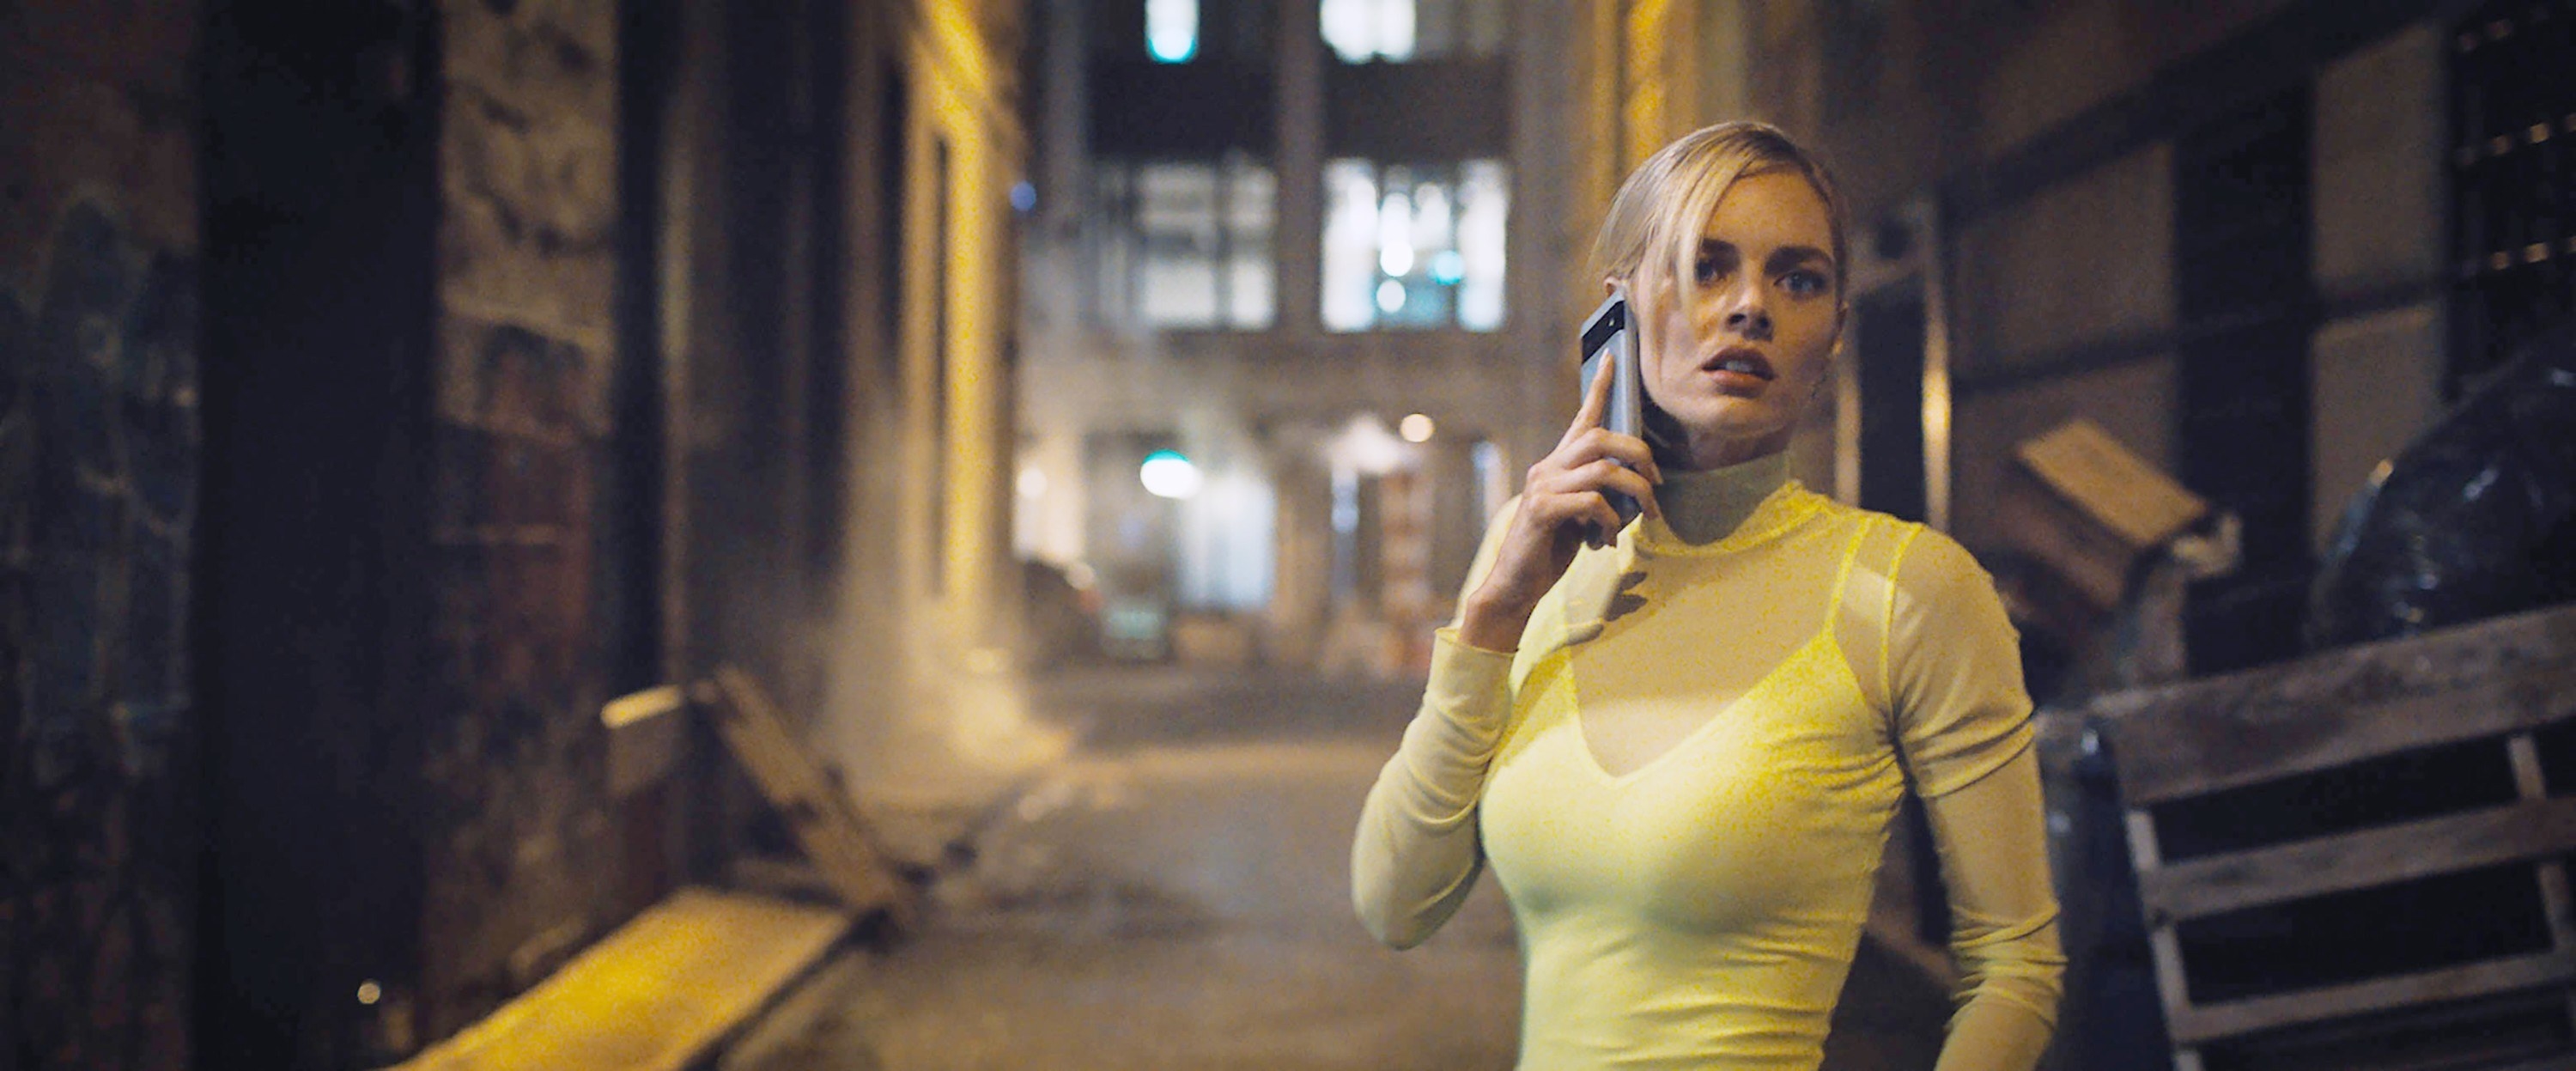 Samara Weaving answers a phone call in an alley